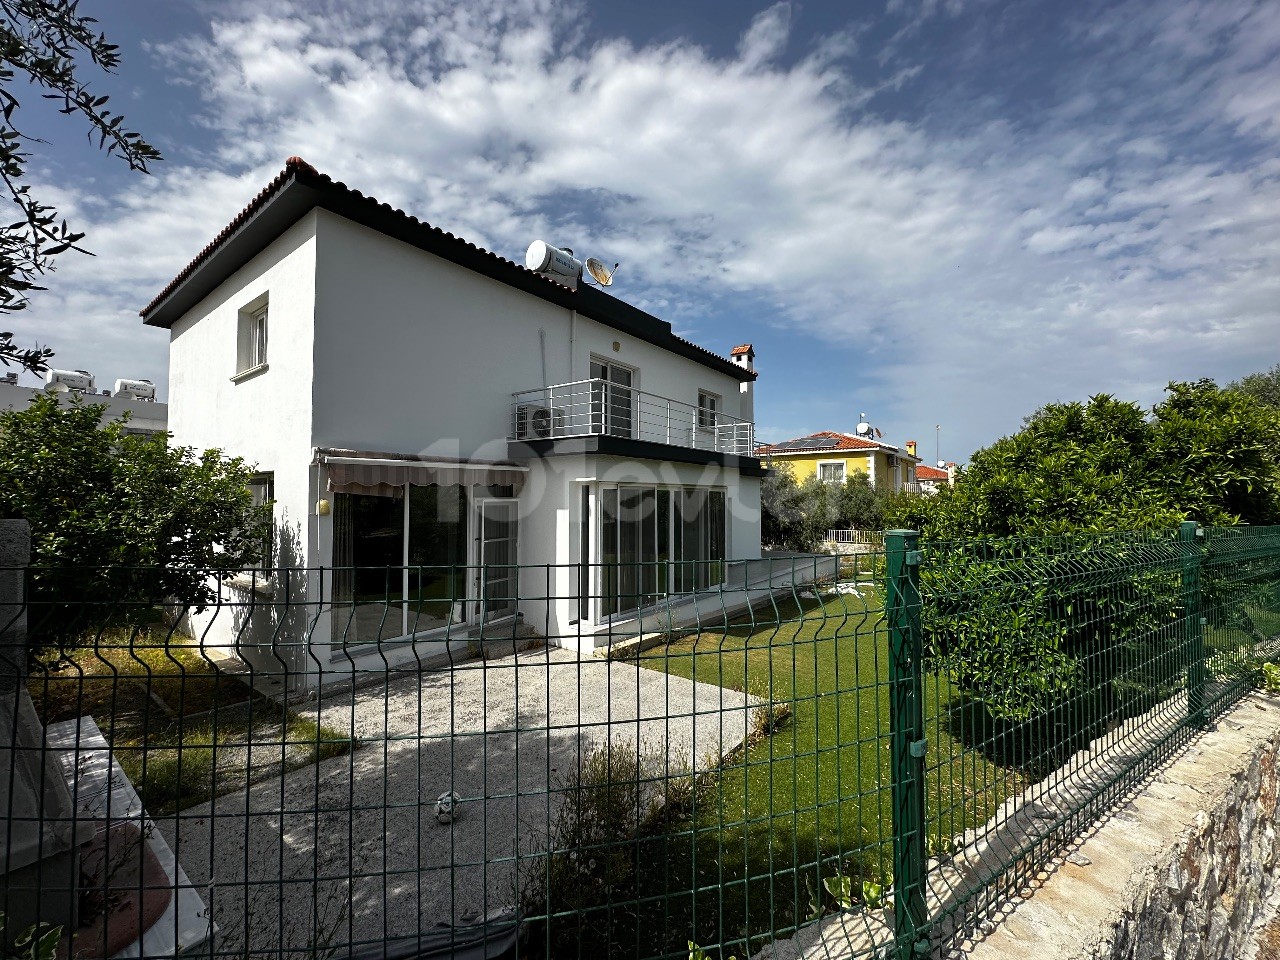 4 Bedroom Private Villa for Rent in Kyrenia Zeytinlik Area